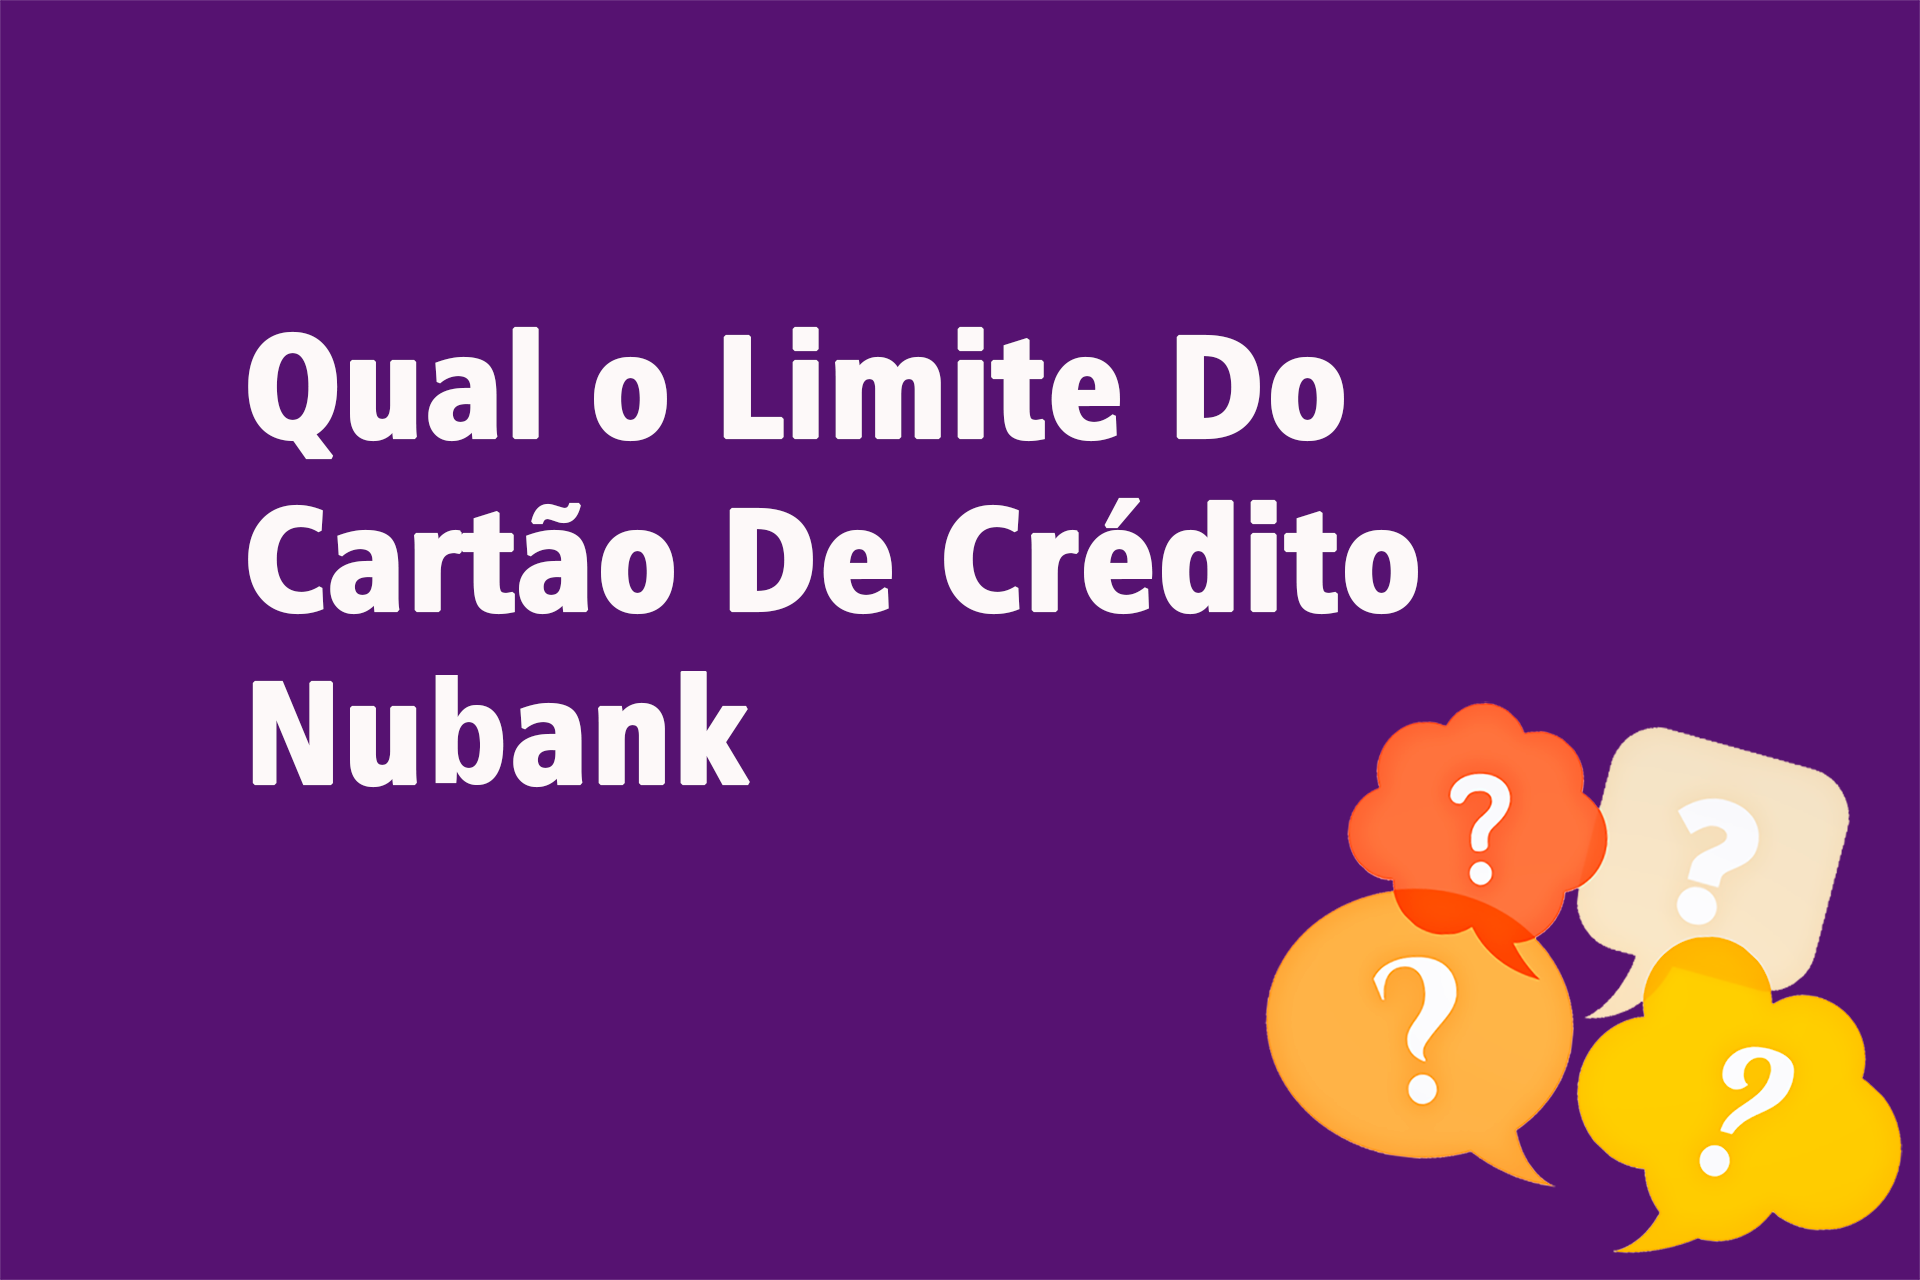 Qual o Limite Do Cartão De Crédito Nubank?